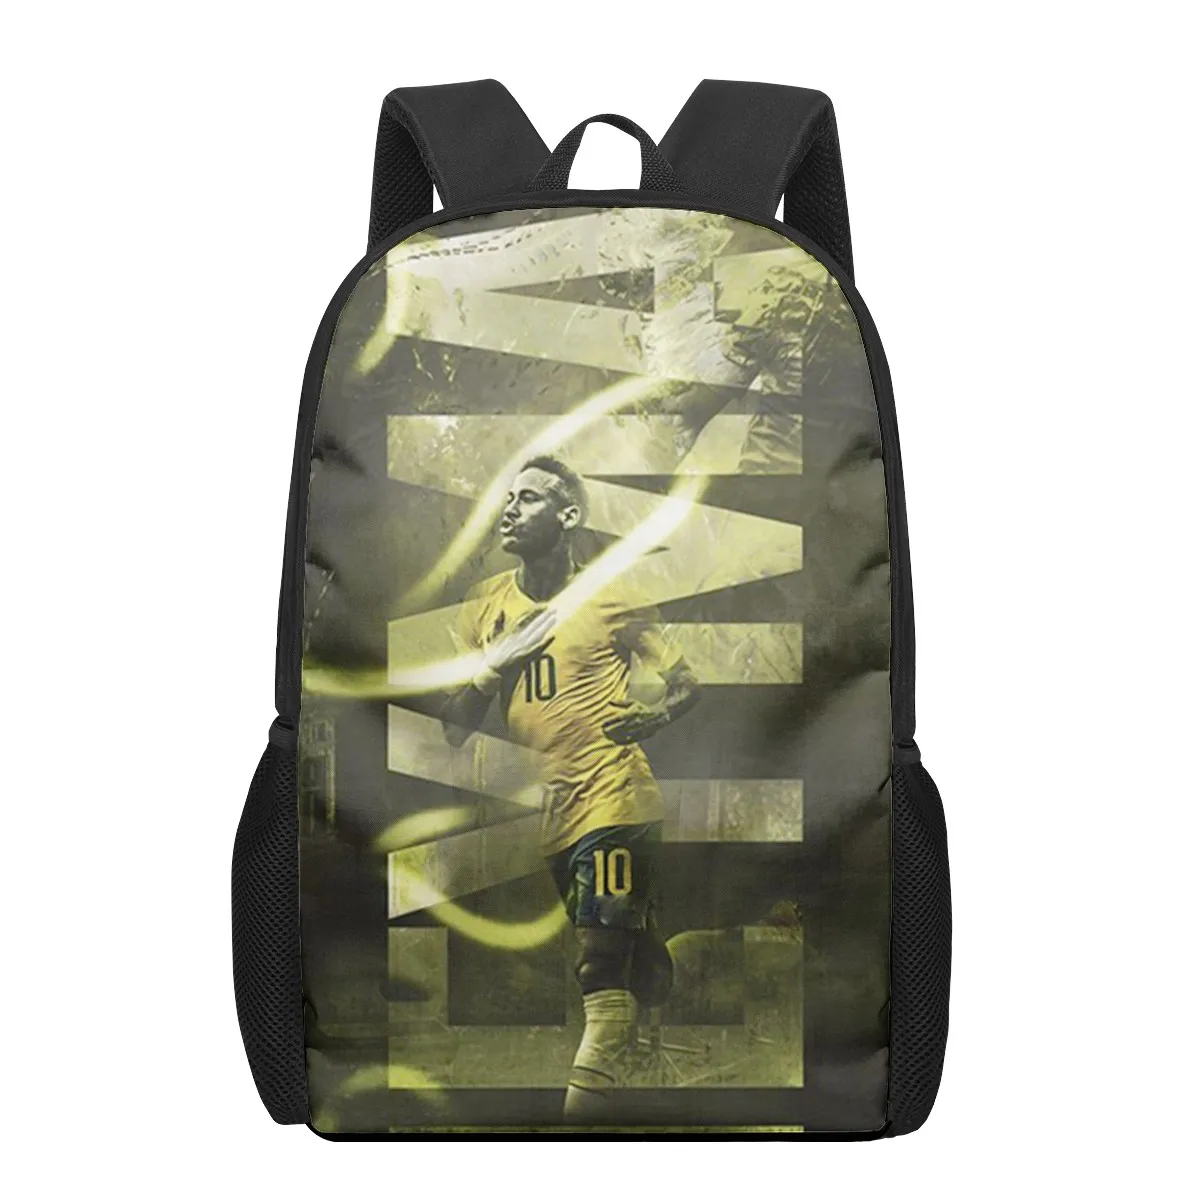 Tanie HOMDOW Football-star-Neymar torby szkolne